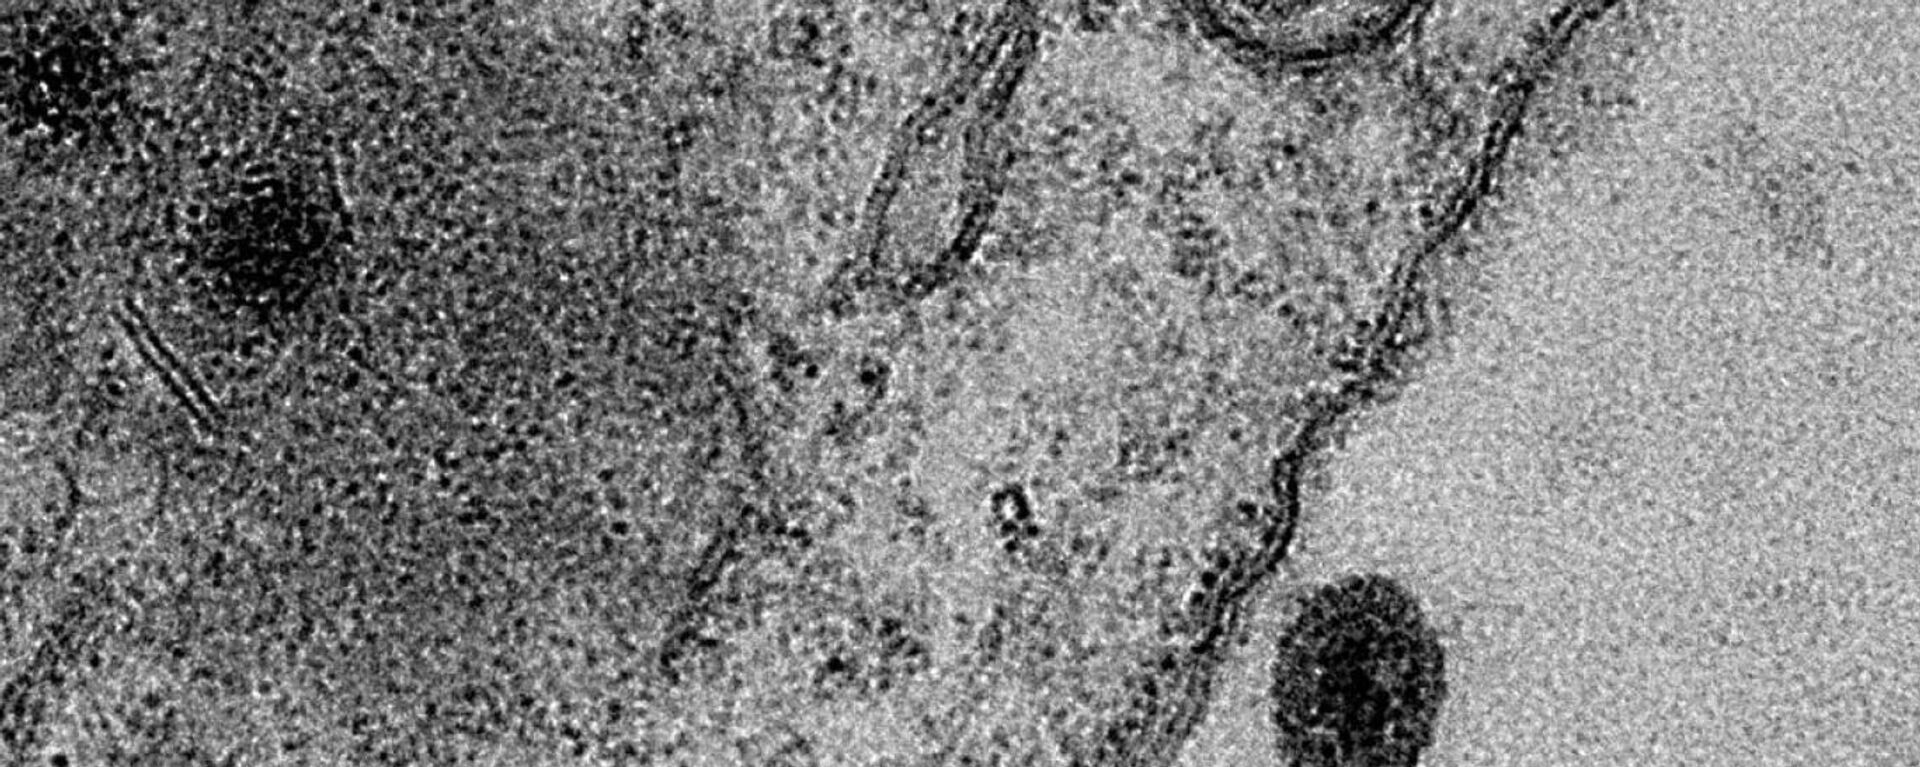 virüs, mikroskop - Sputnik Türkiye, 1920, 25.10.2021